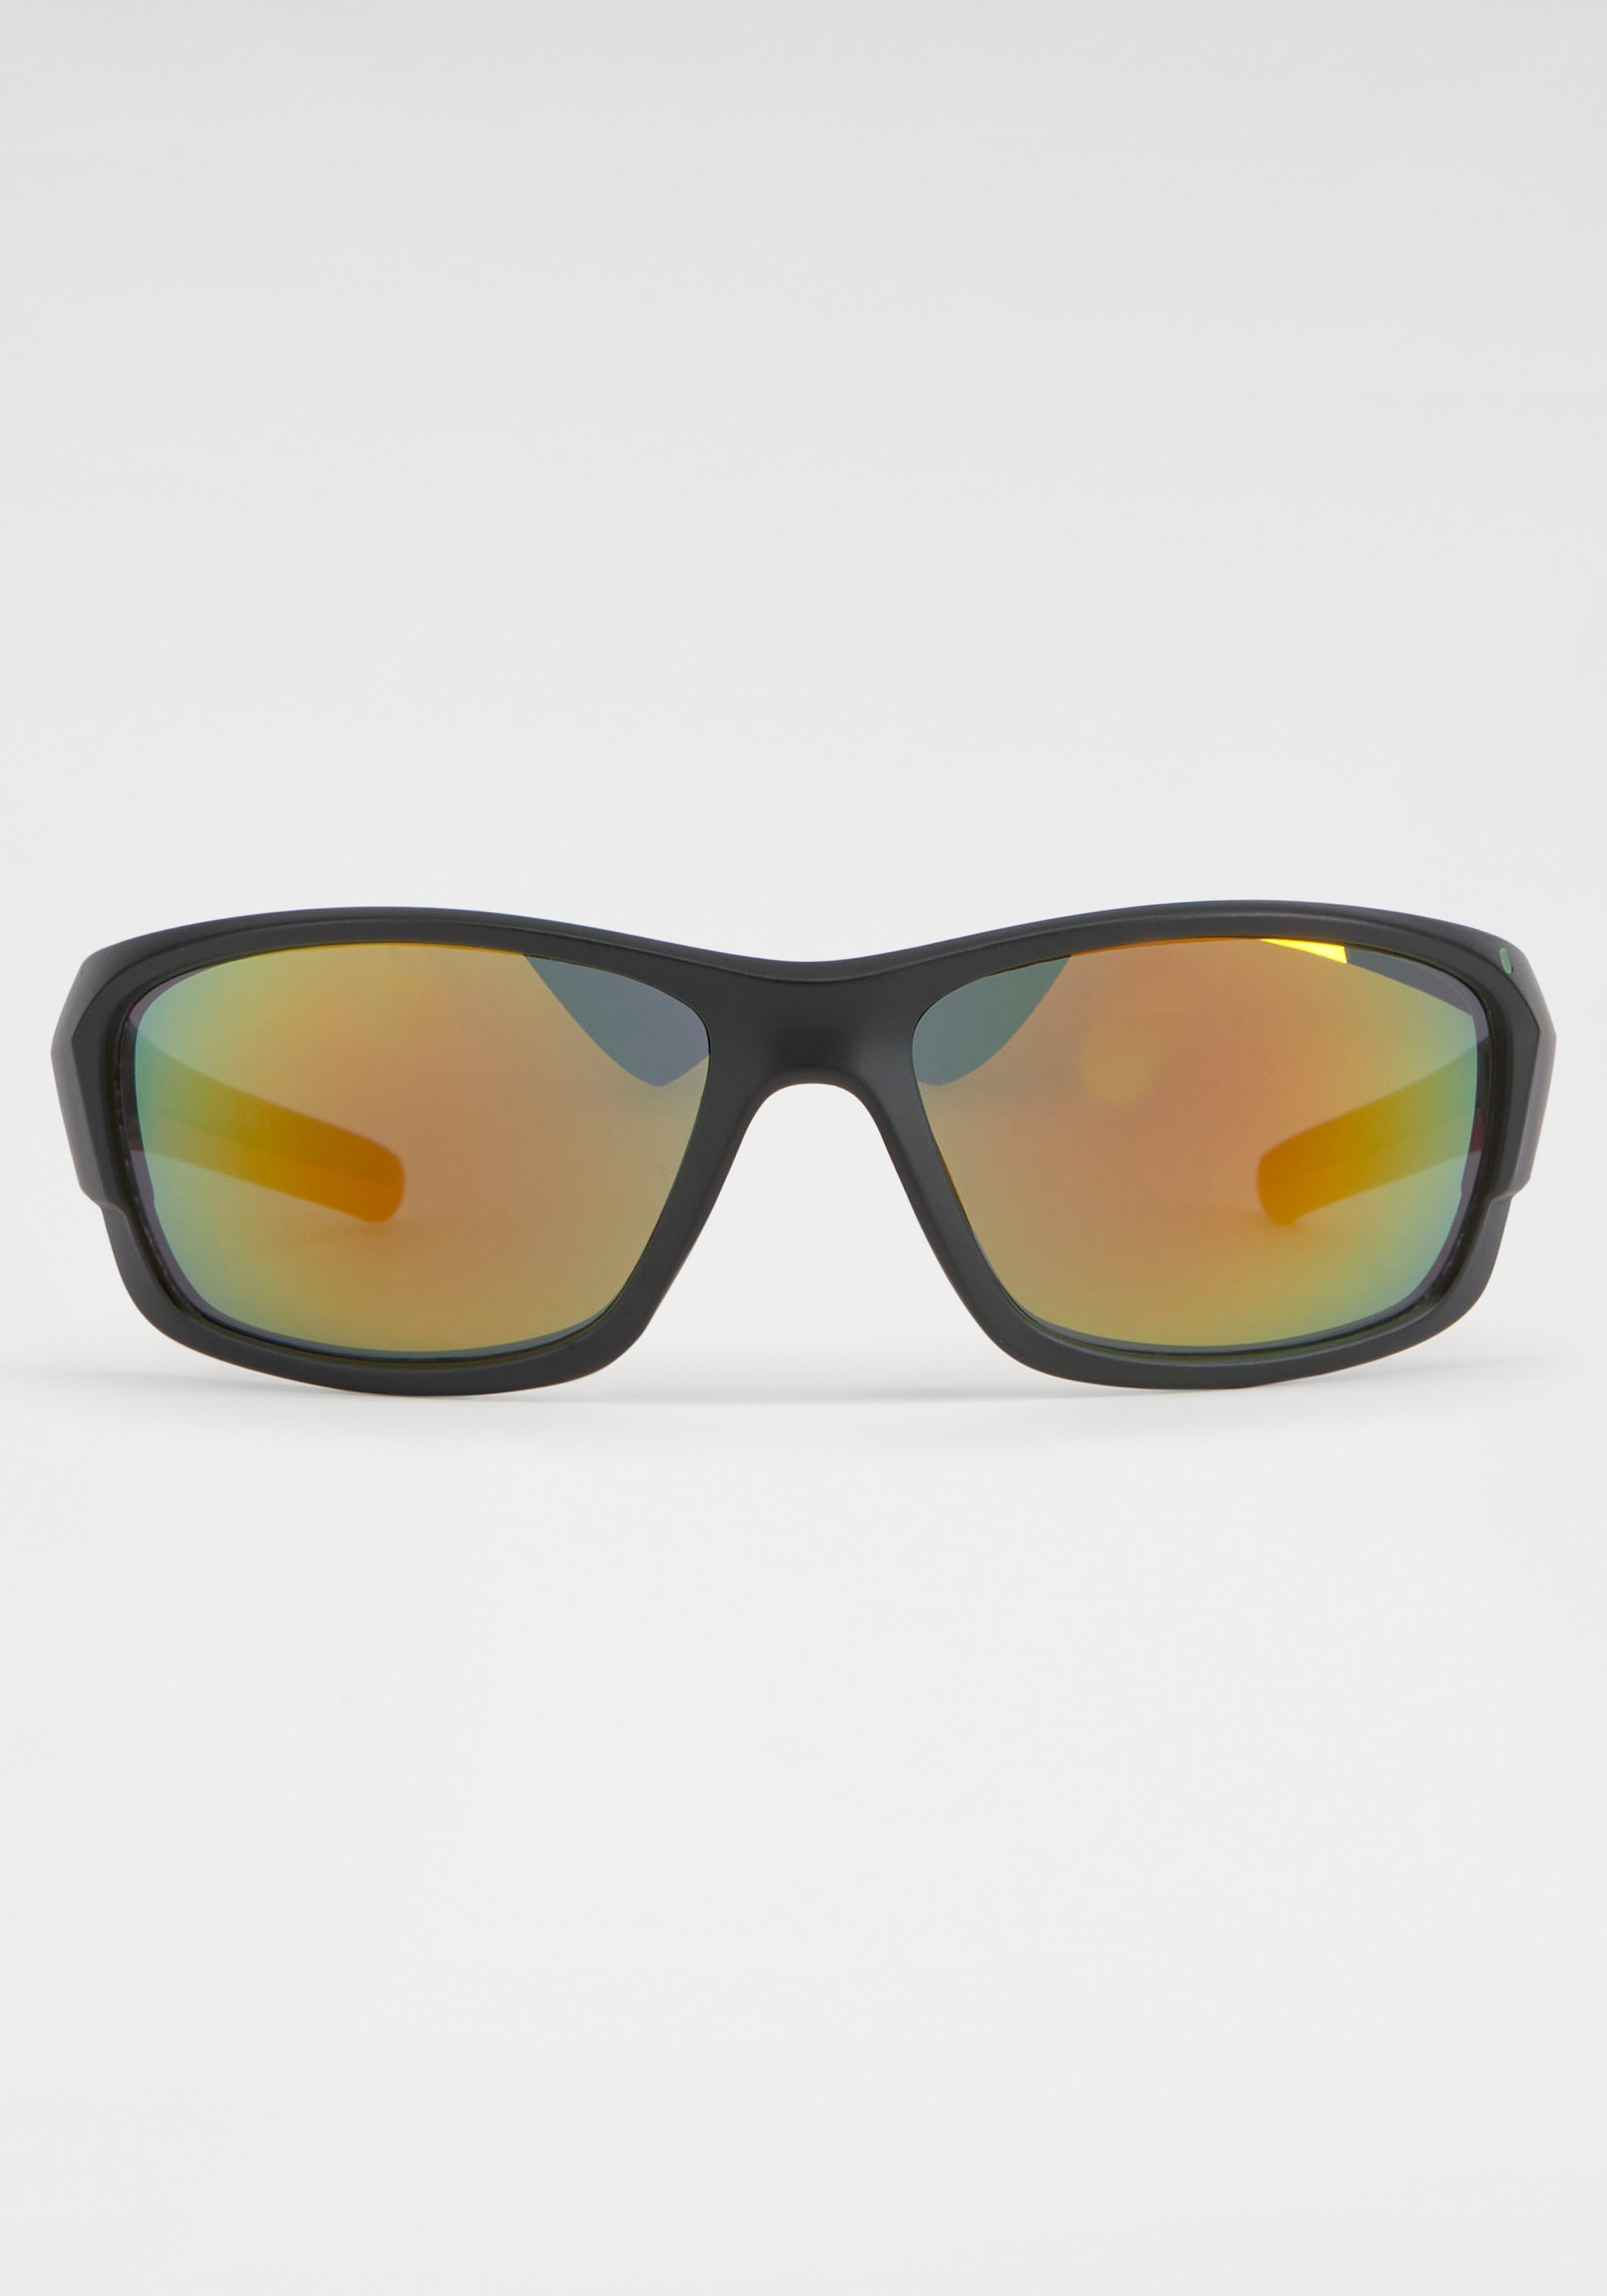 BACK IN BLACK verspiegelten Eyewear mit bei Gläsern Sonnenbrille